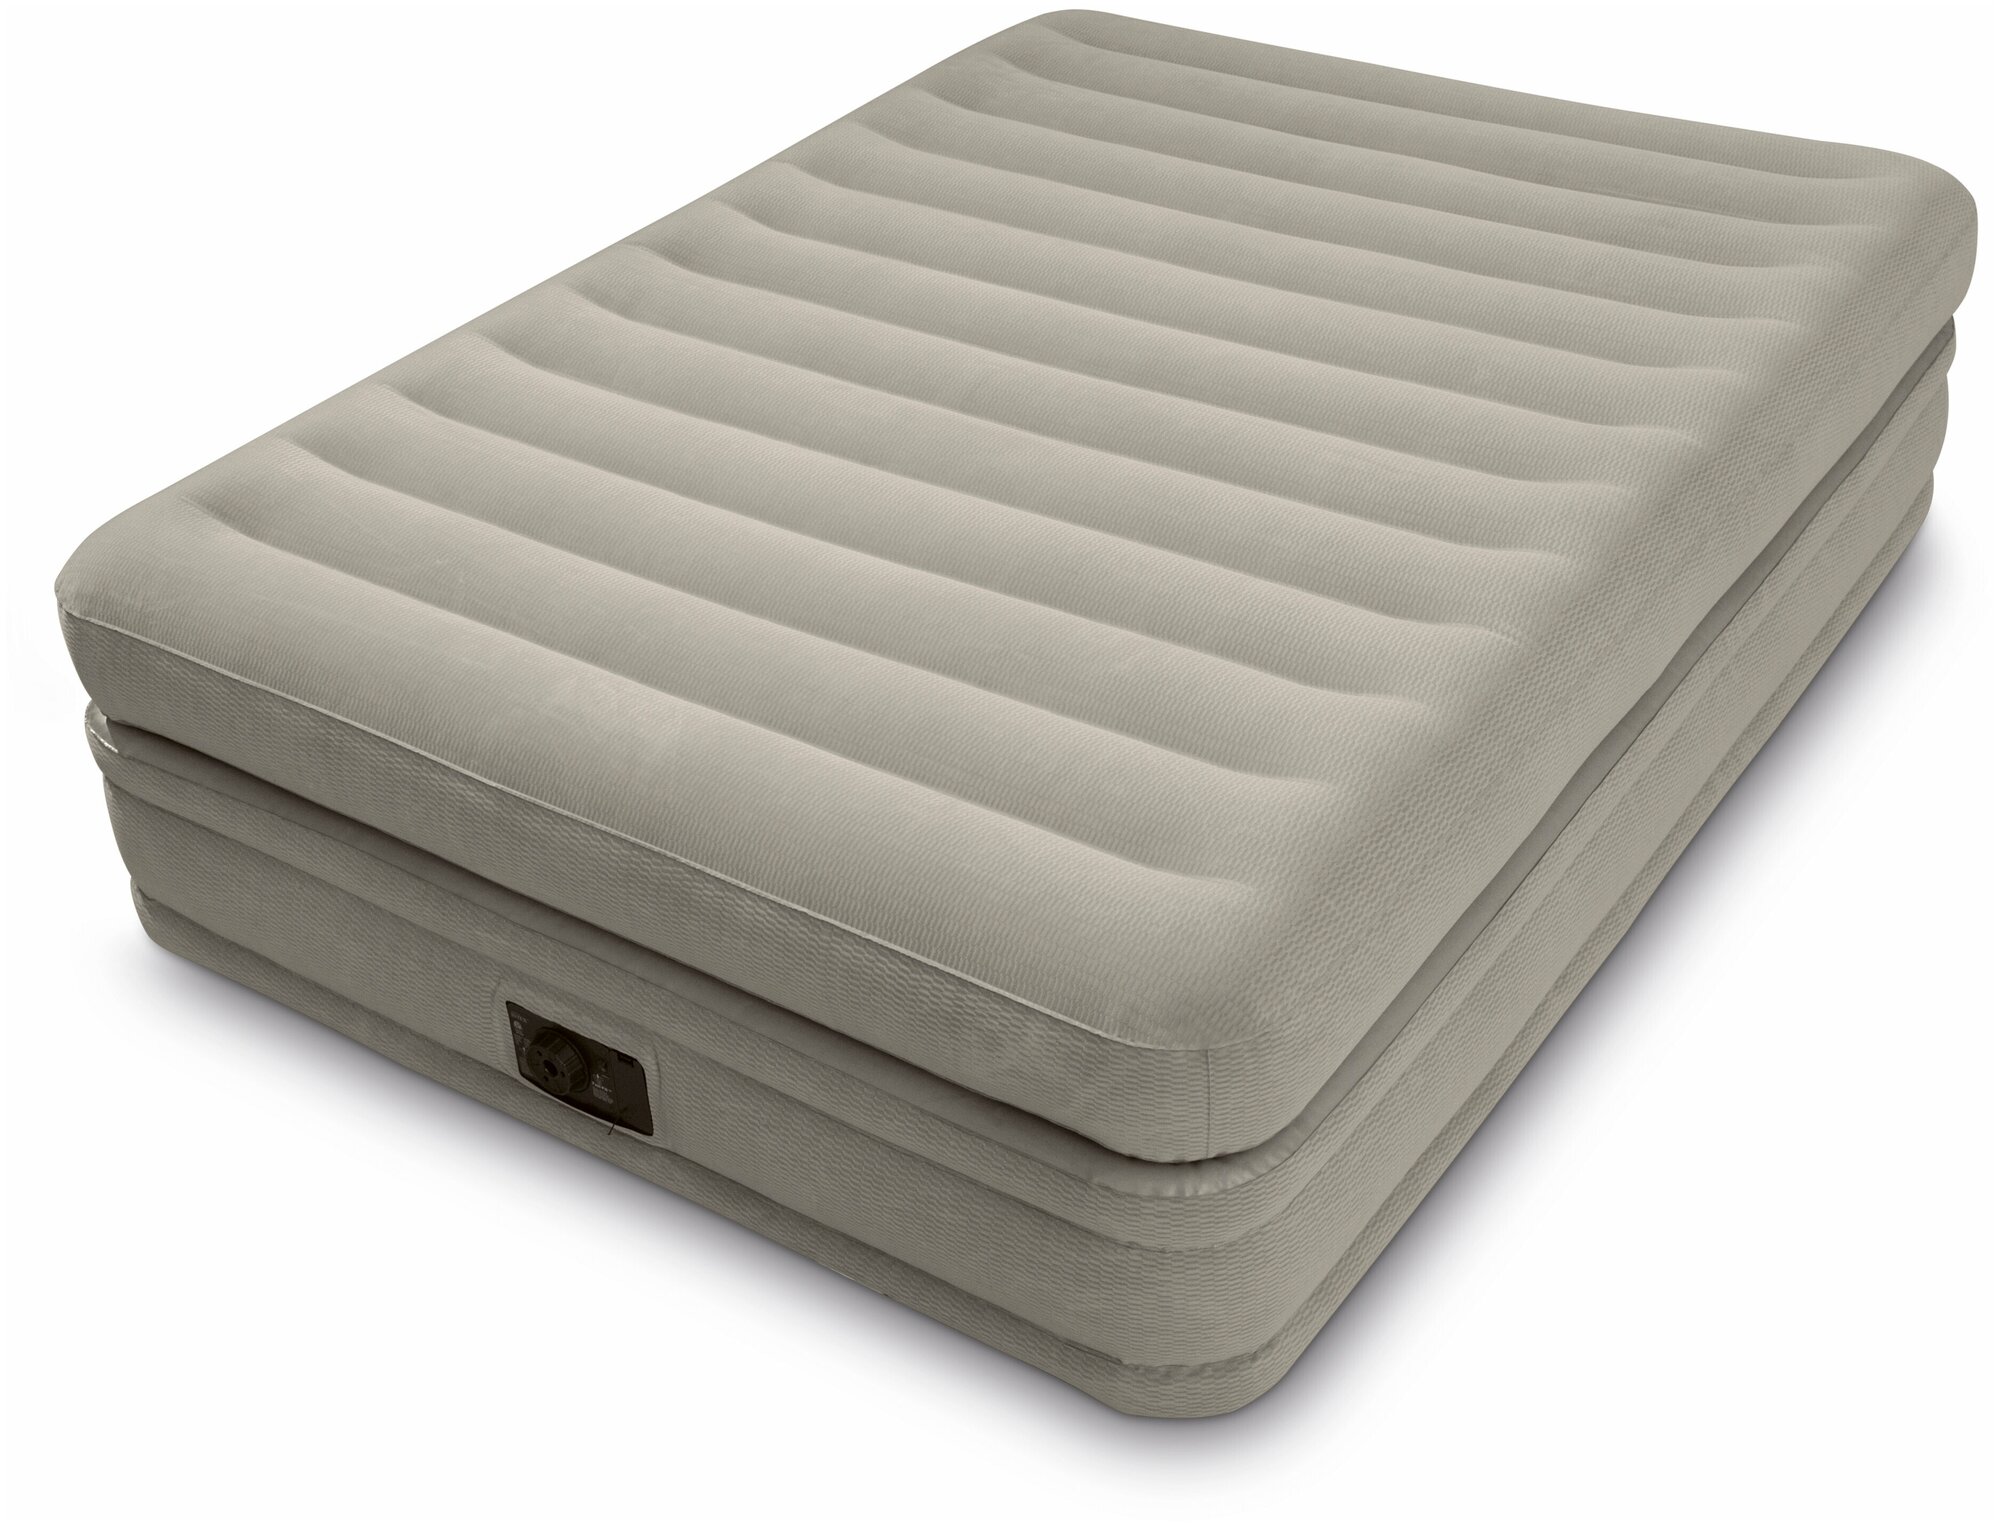 Надувная кровать Intex Prime Comfort Elevated Airbed (64446)